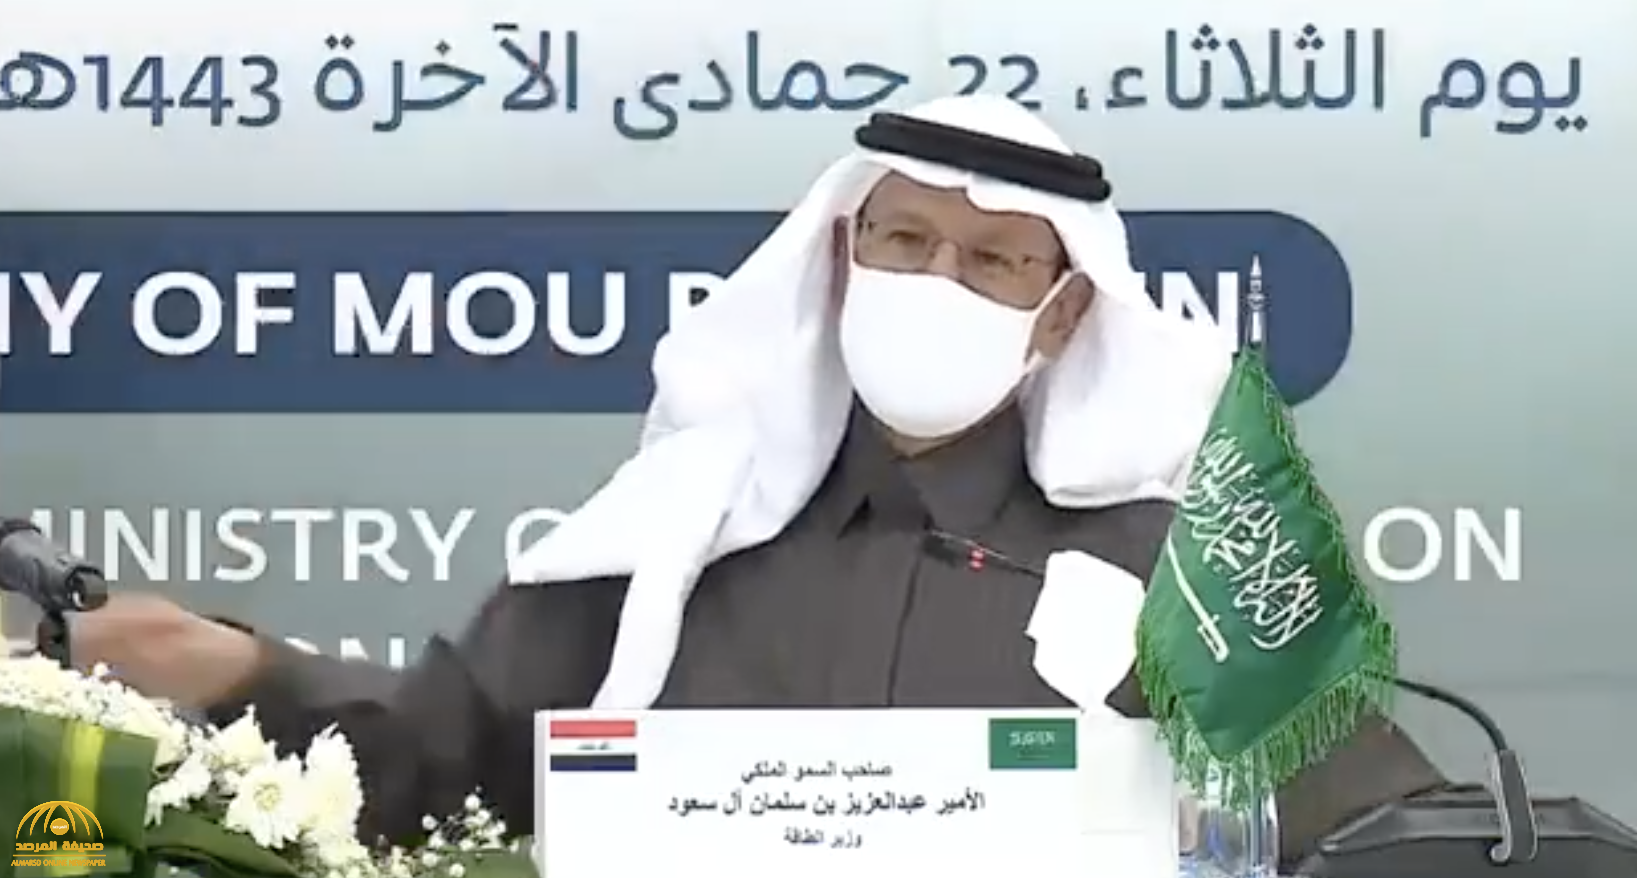 شاهد .. الأمير عبدالعزيز بن سلمان يمازح وزير الطاقة العراقي بـ"المأكولات العراقية"